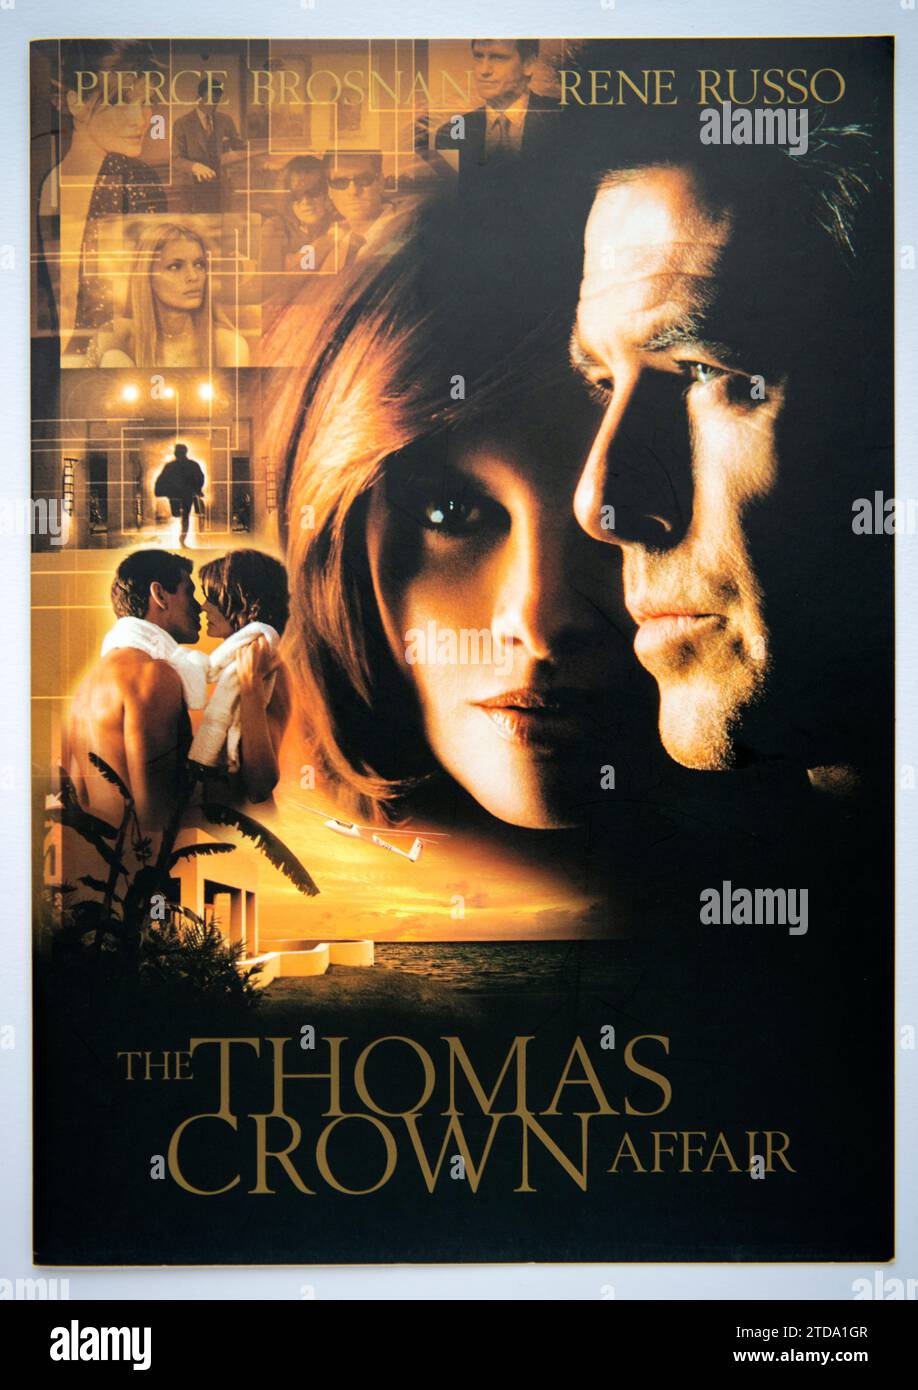 Couverture d'informations publicitaires pour l'affaire Thomas Crown, un film roman / crime qui est sorti en 1999 Banque D'Images